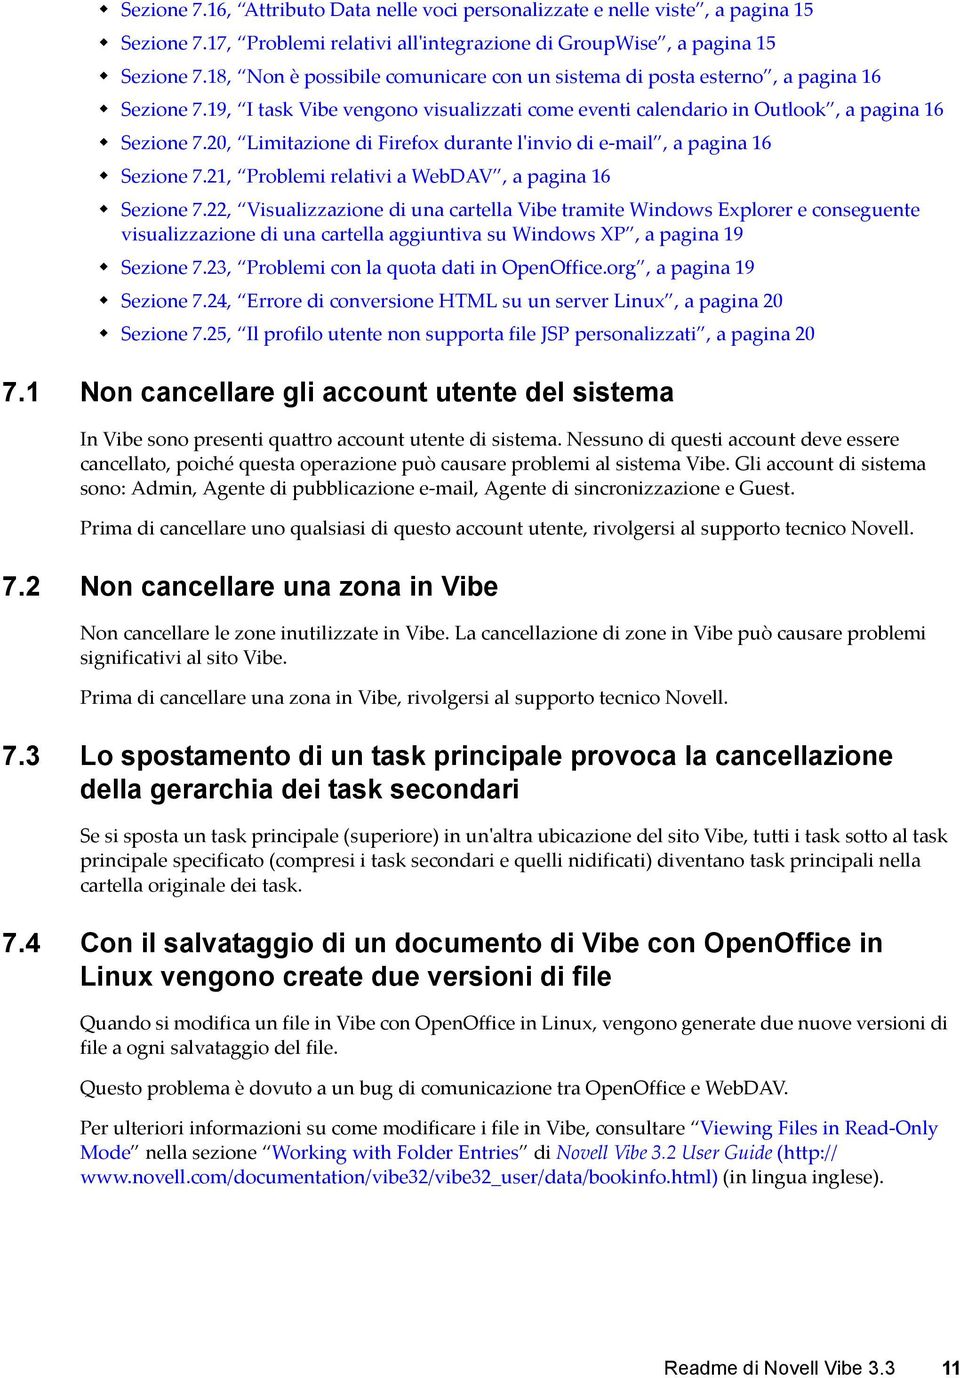 20, Limitazione di Firefox durante l'invio di e-mail, a pagina 16 Sezione 7.21, Problemi relativi a WebDAV, a pagina 16 Sezione 7.